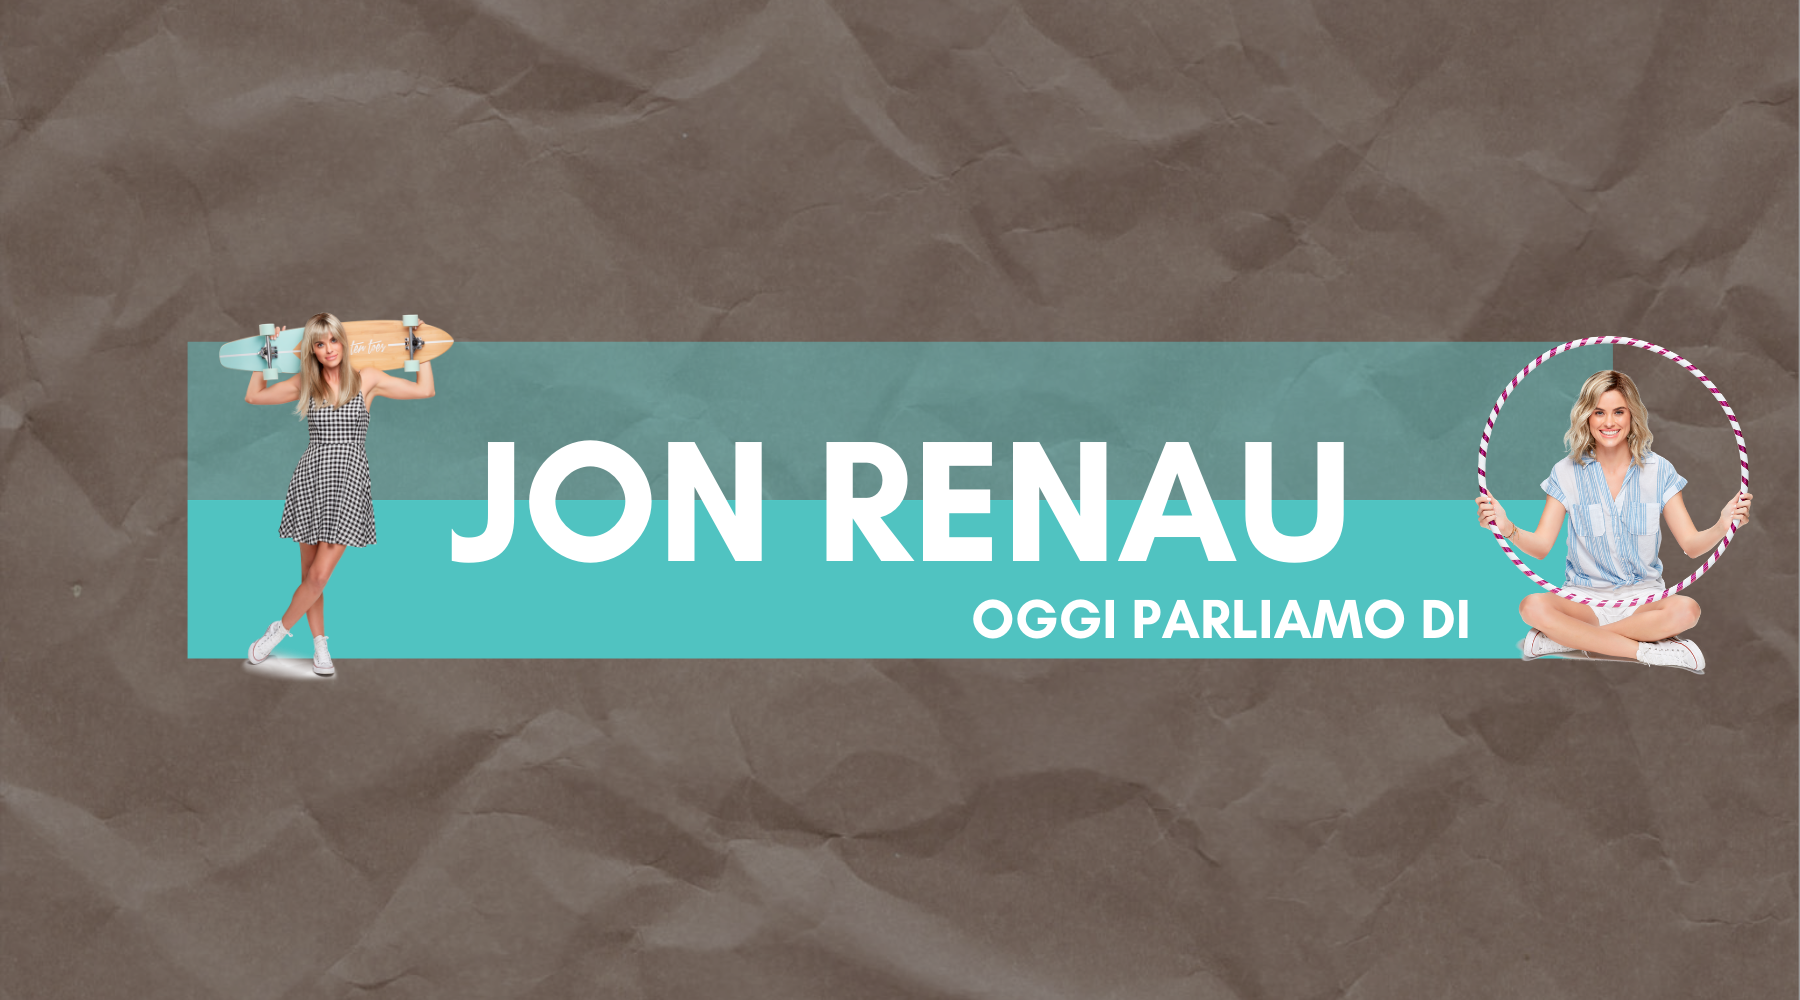 Jon Renau california and smartlace collection, parrucche sintetiche di altissima qualità. Wiglove